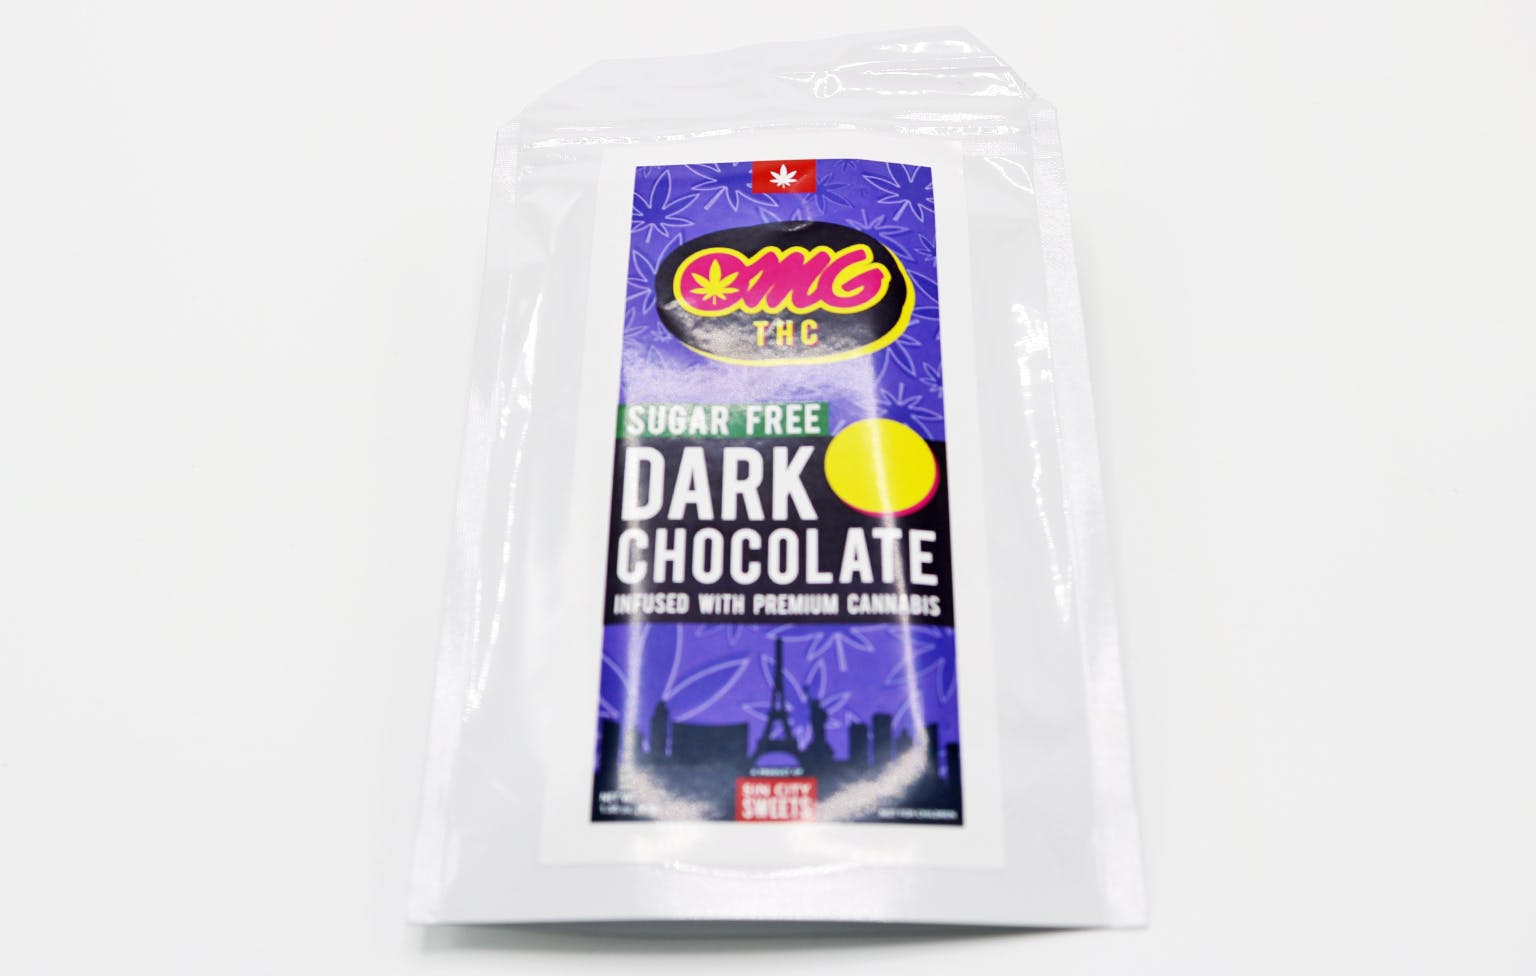 edible-omg-sf-chocolate-bar-100mg-epc